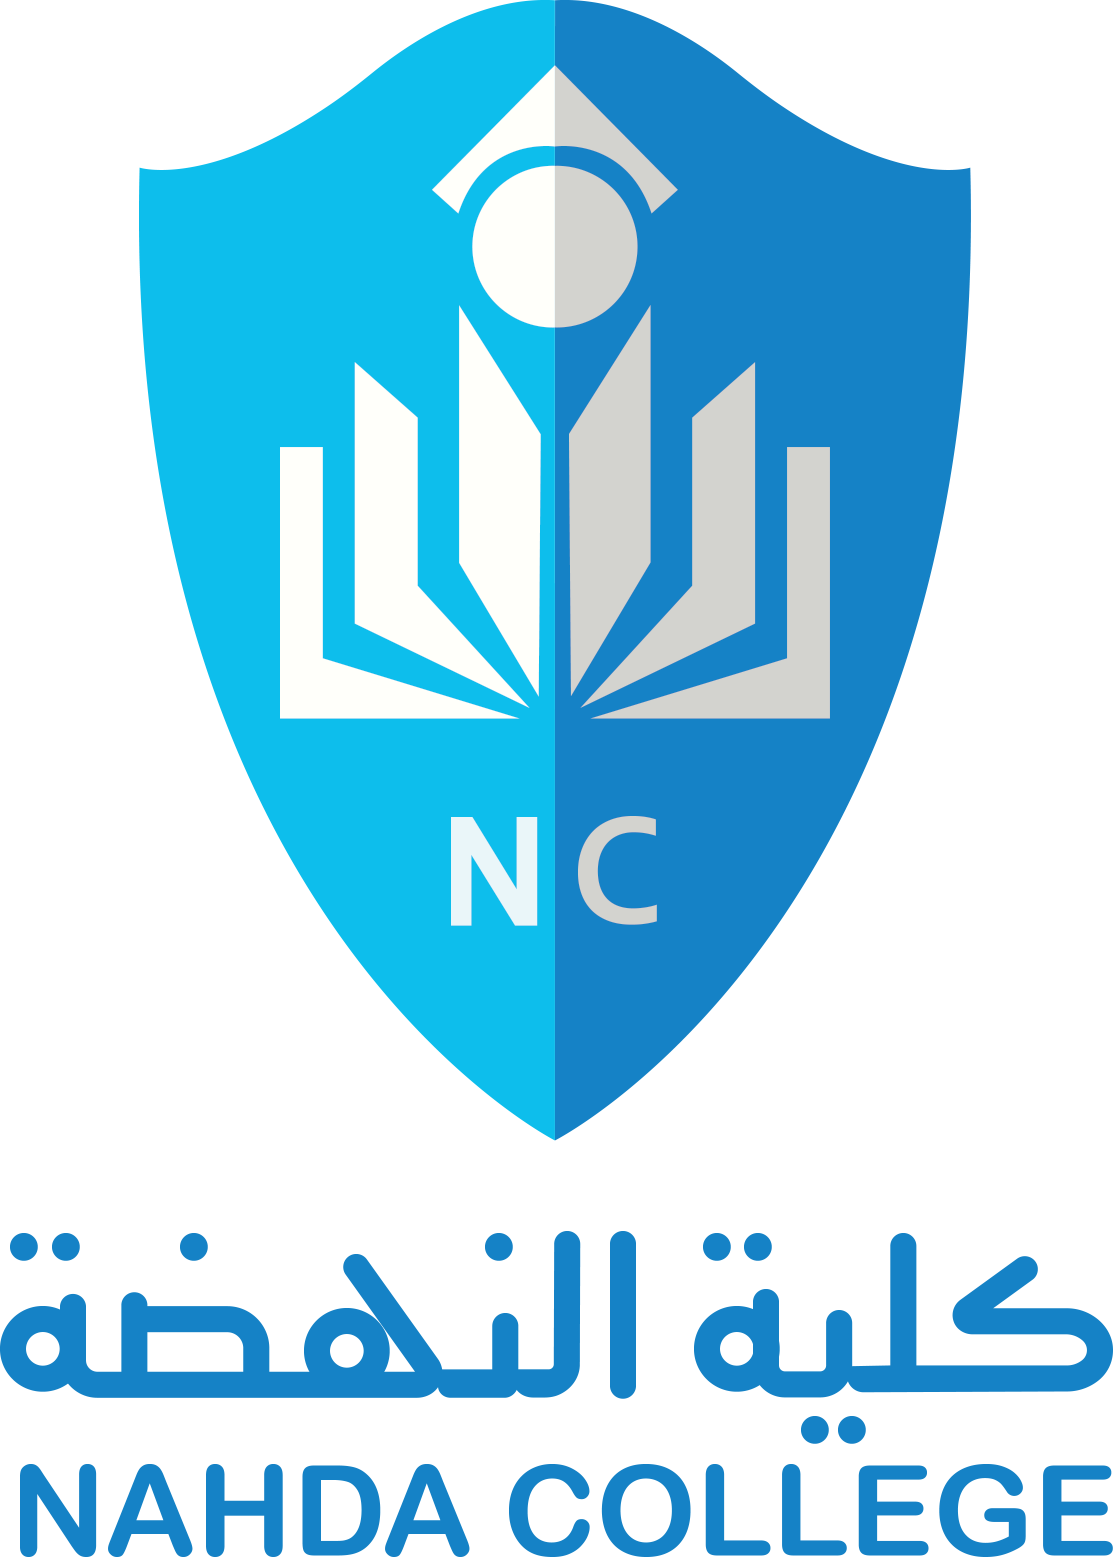 Nahda College logo